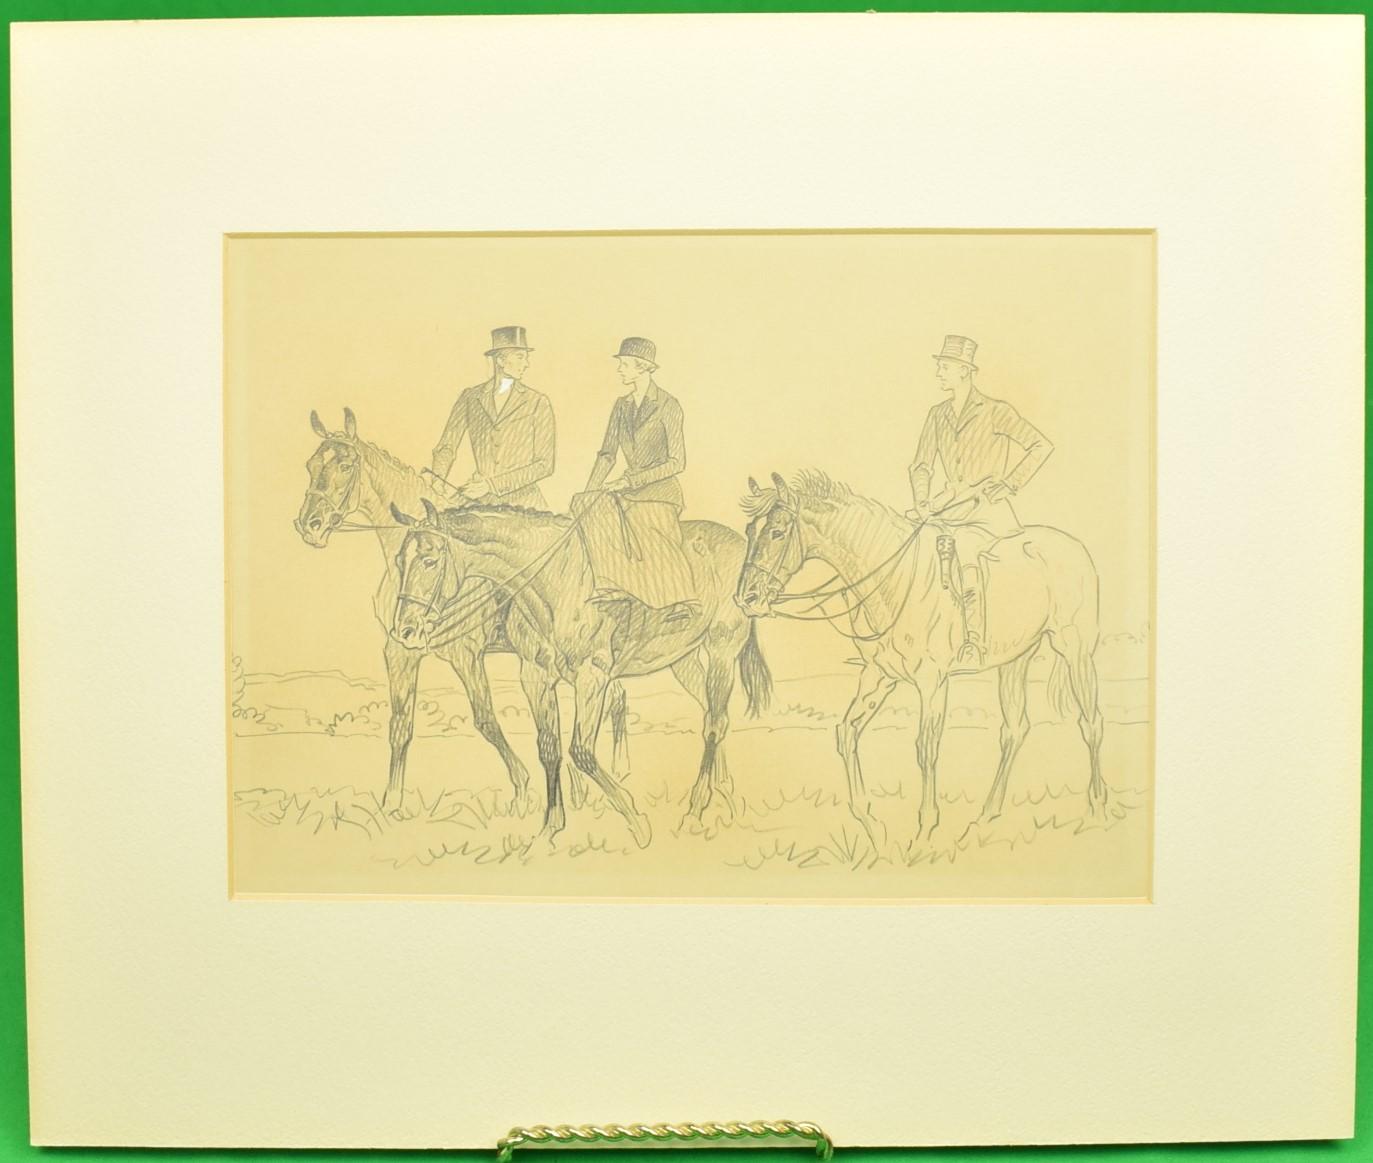 Paul Desmond Brown Figurative Art - Paul Brown Original c1937 Pencil Drawing w/ 3 Equestrian Riders